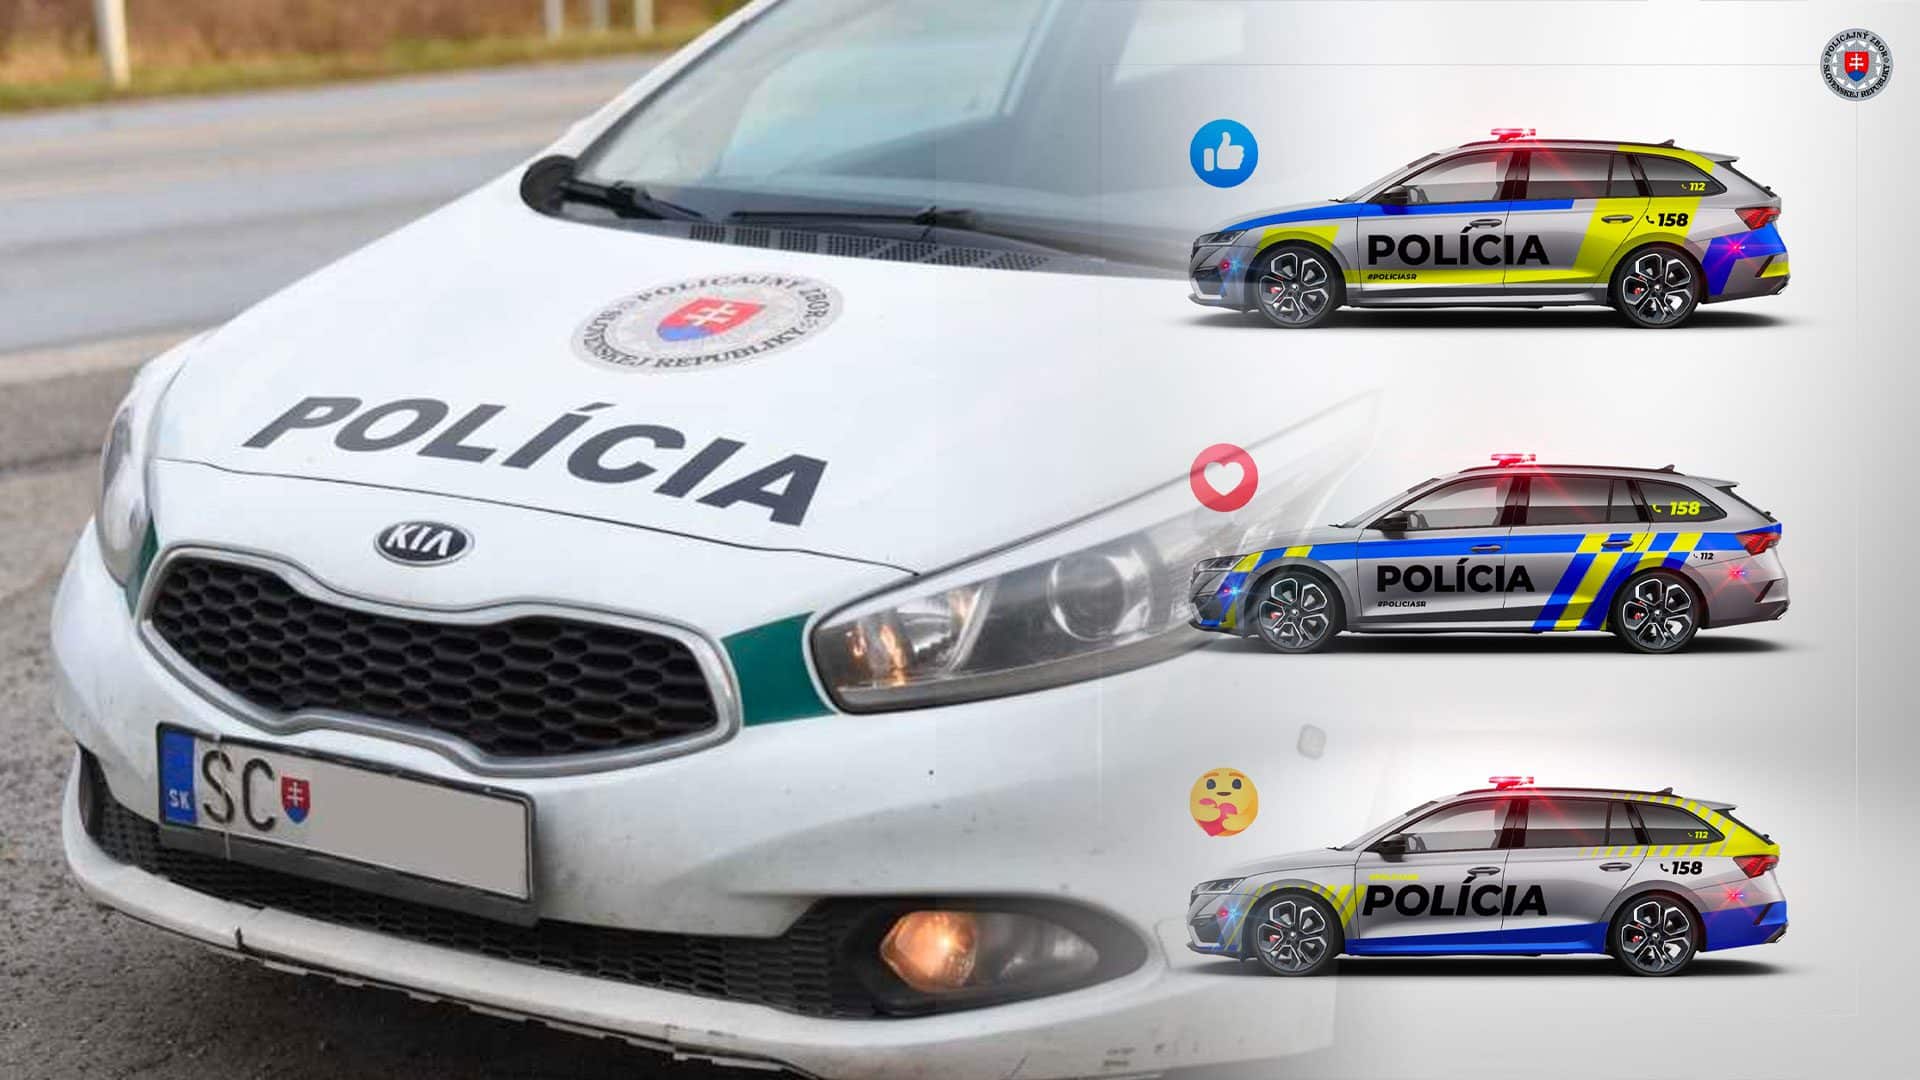 Policajné autá slovenskej republiky